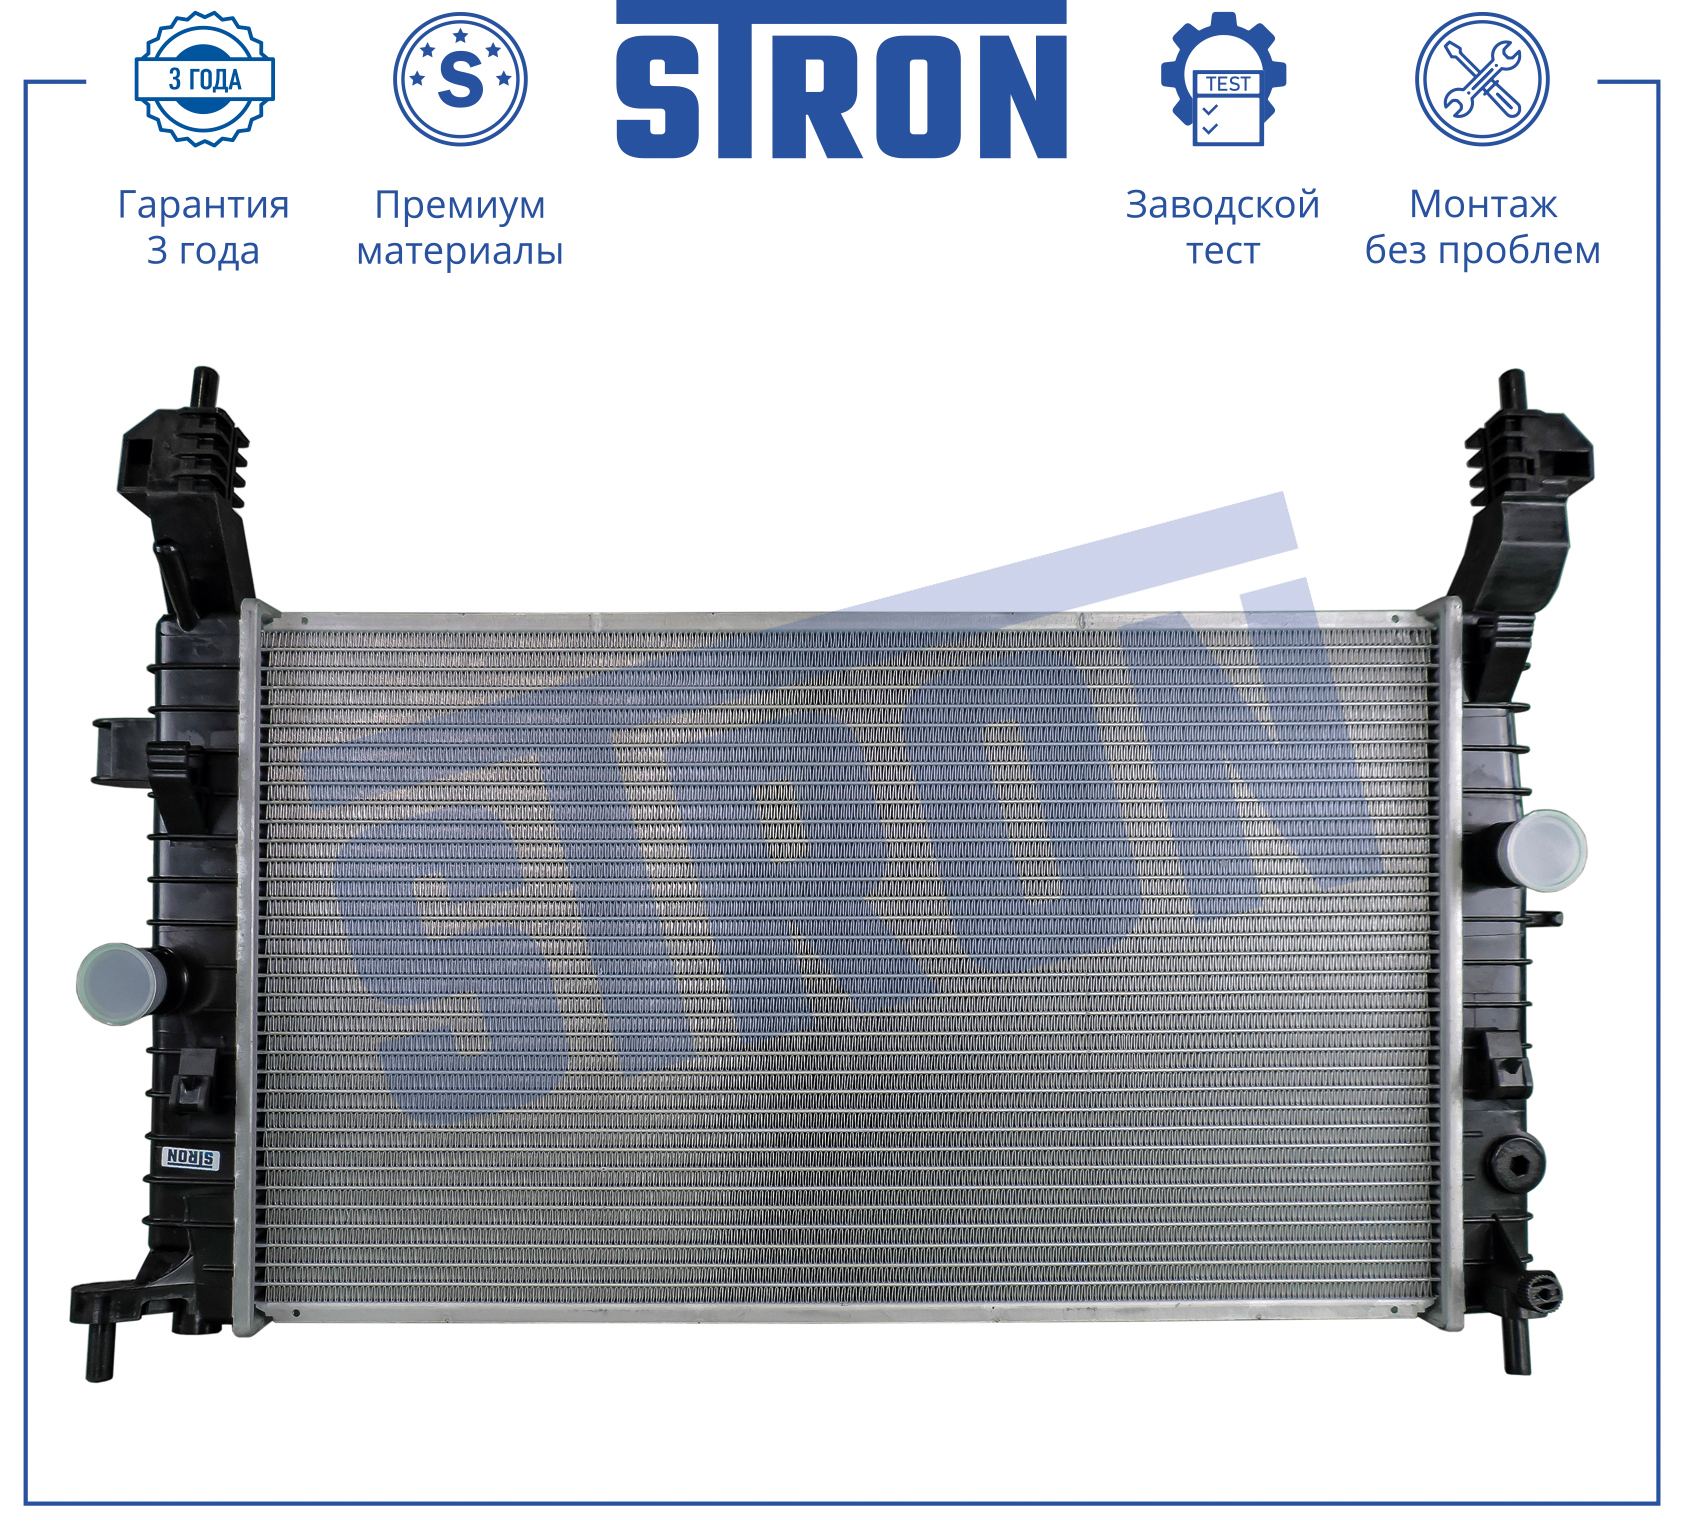 STRON STR0287 Радиатор двигателя (Гарантия 3 года, Увеличенный ресурс)